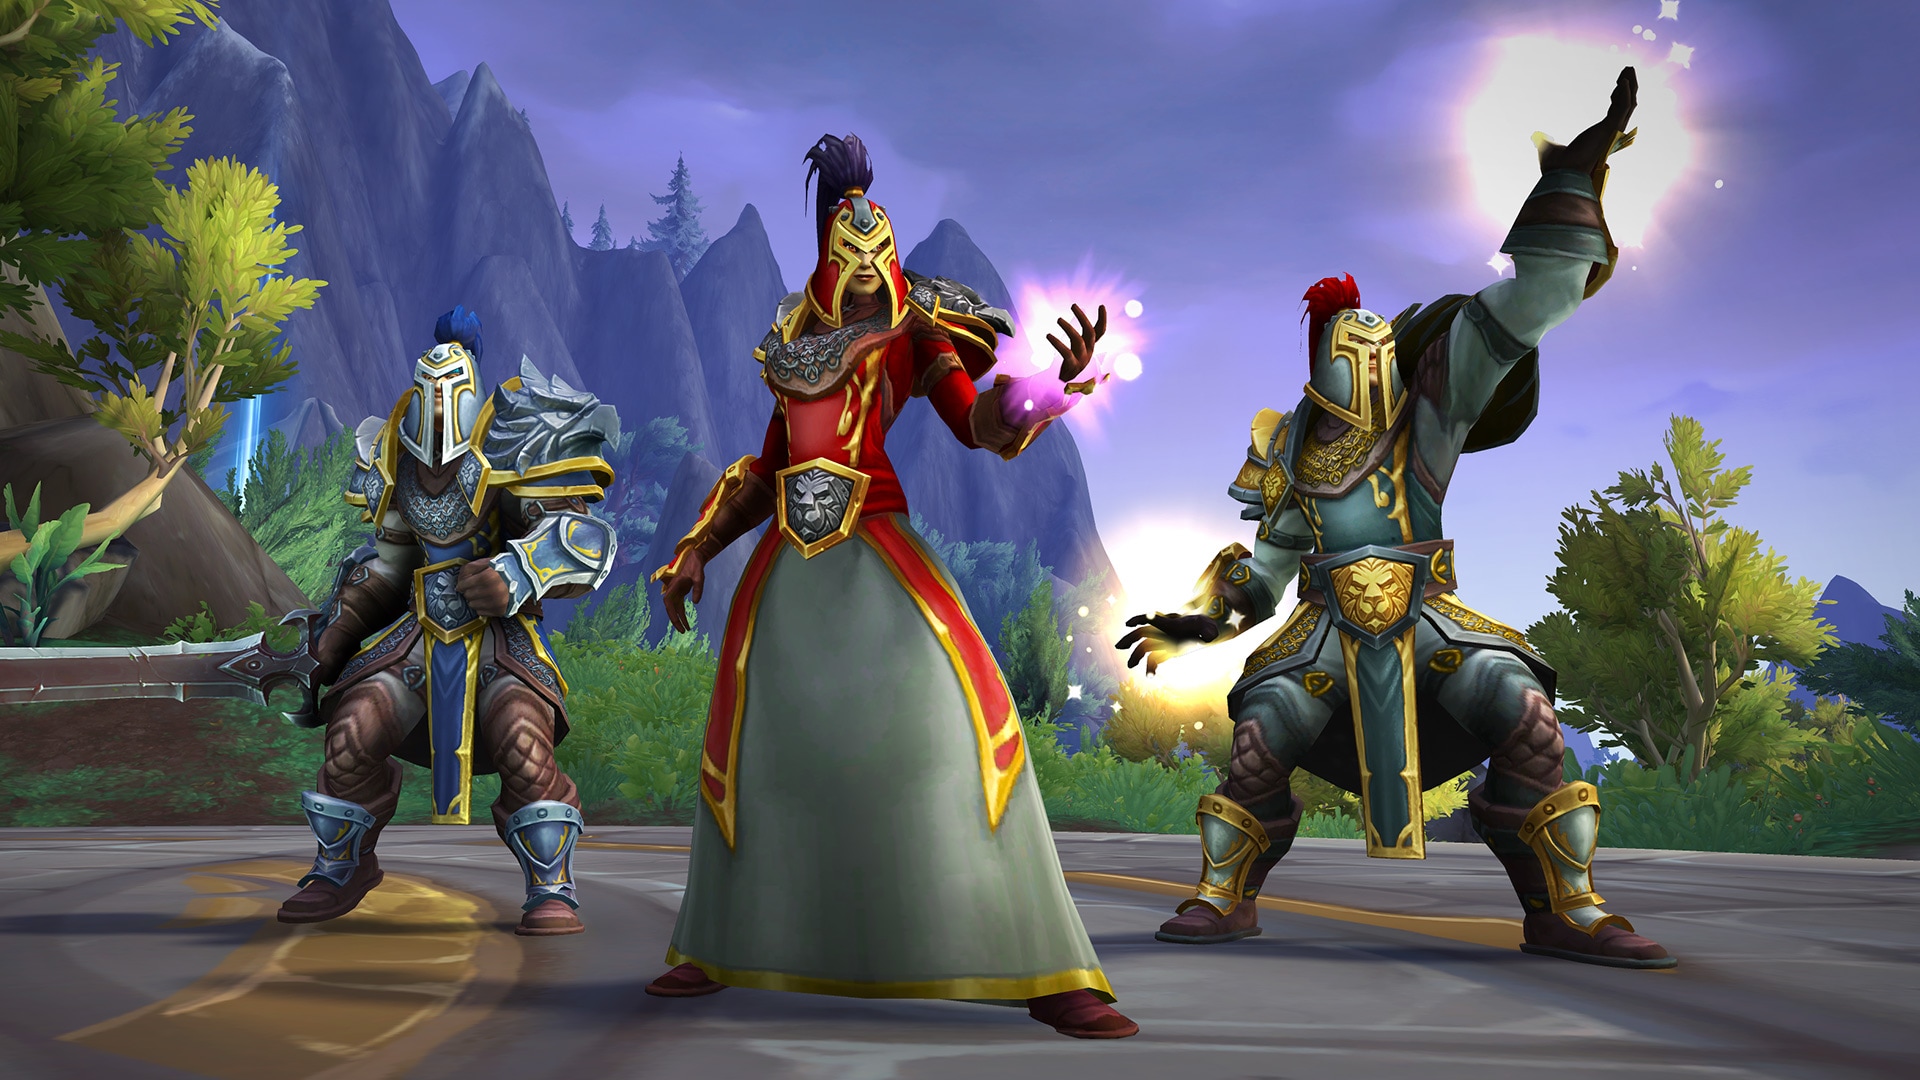 Trois variantes de l’armure humaine. (De gauche à droite) Armure classique bleue et or, robe rouge et grise avec casque classique humain et armure en cuir vert. Les trois casques sont dotés de plumes assorties.